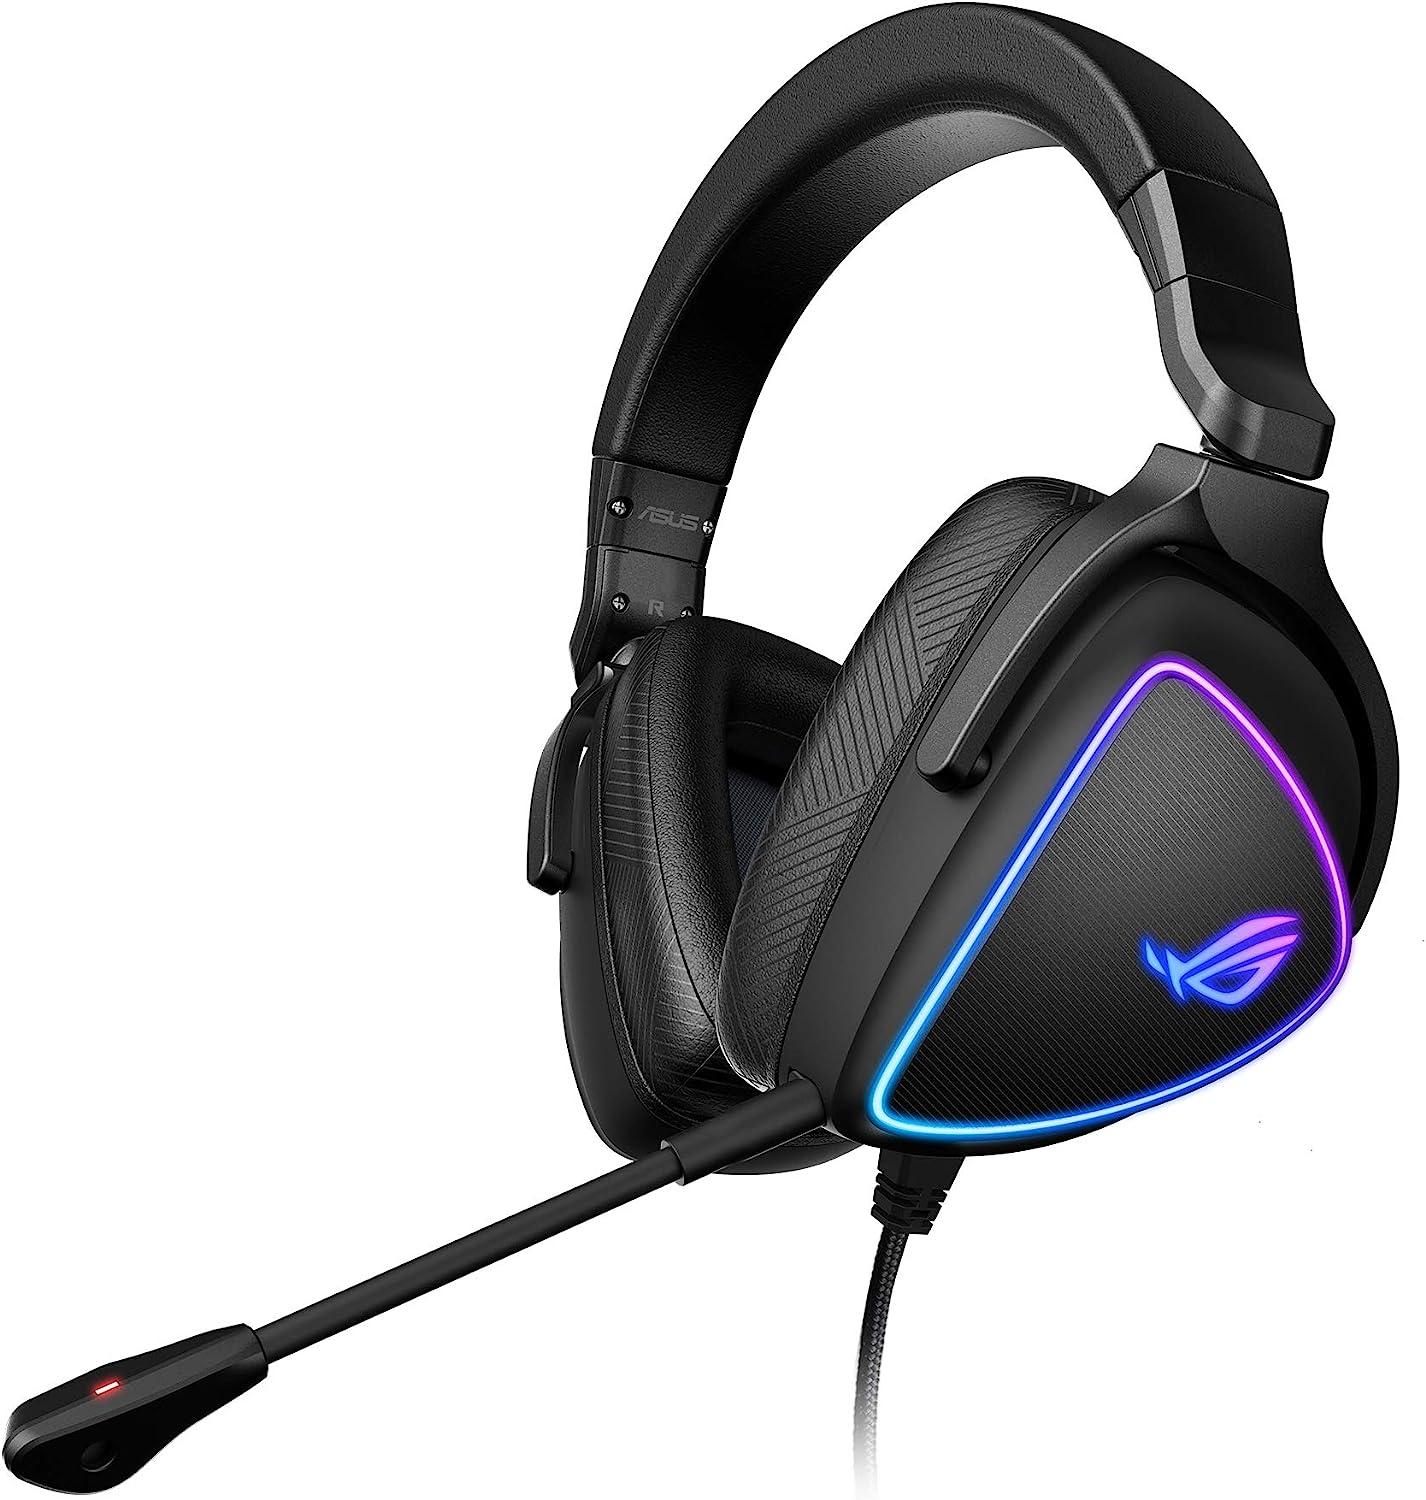 Asus Gaming-Headset mit Surround und RGB-Beleuchtung